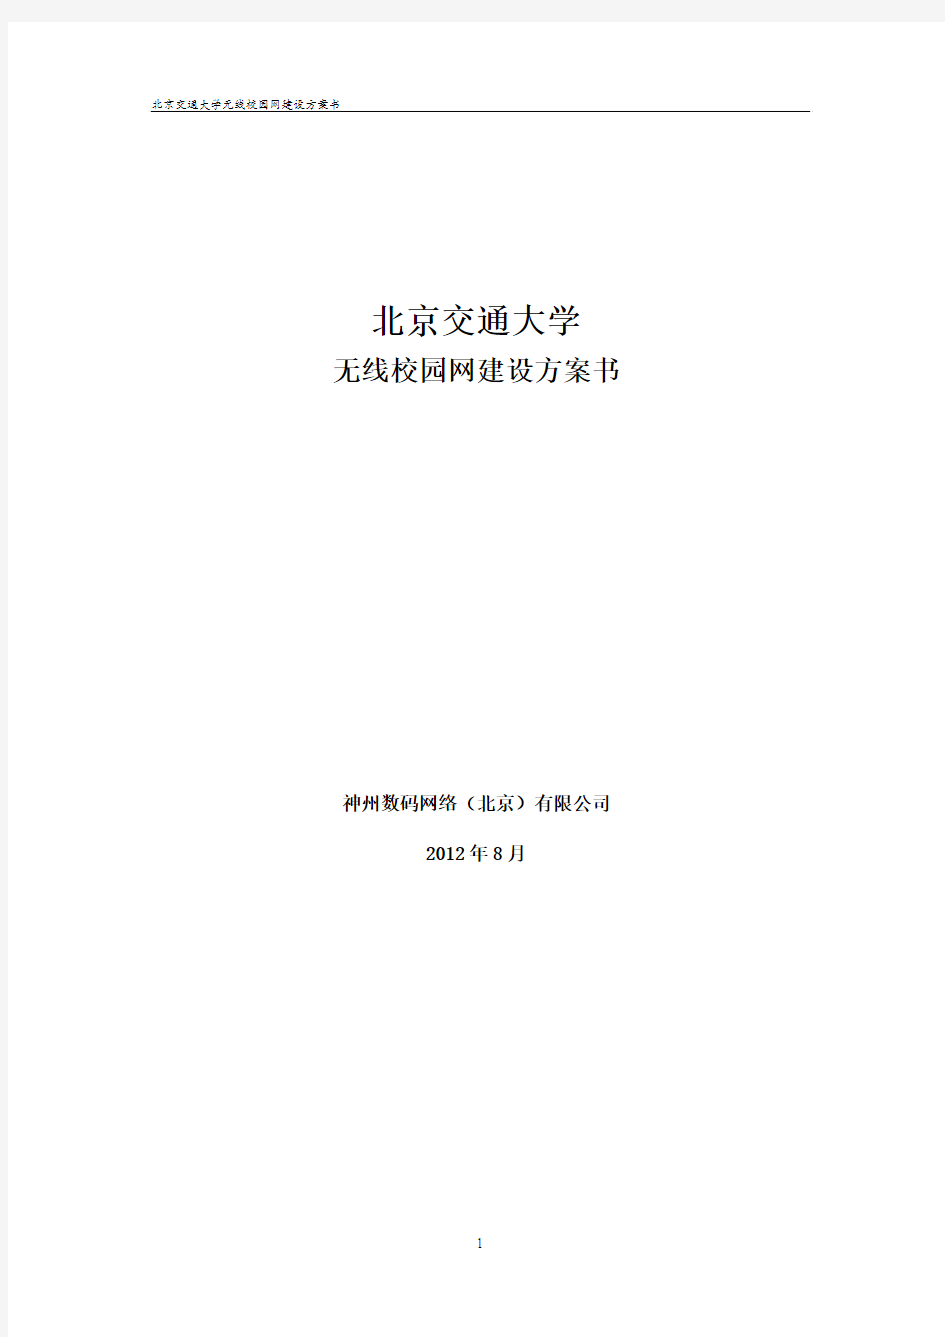 北京交通大学无线校园网建设方案书(20120828) (1)